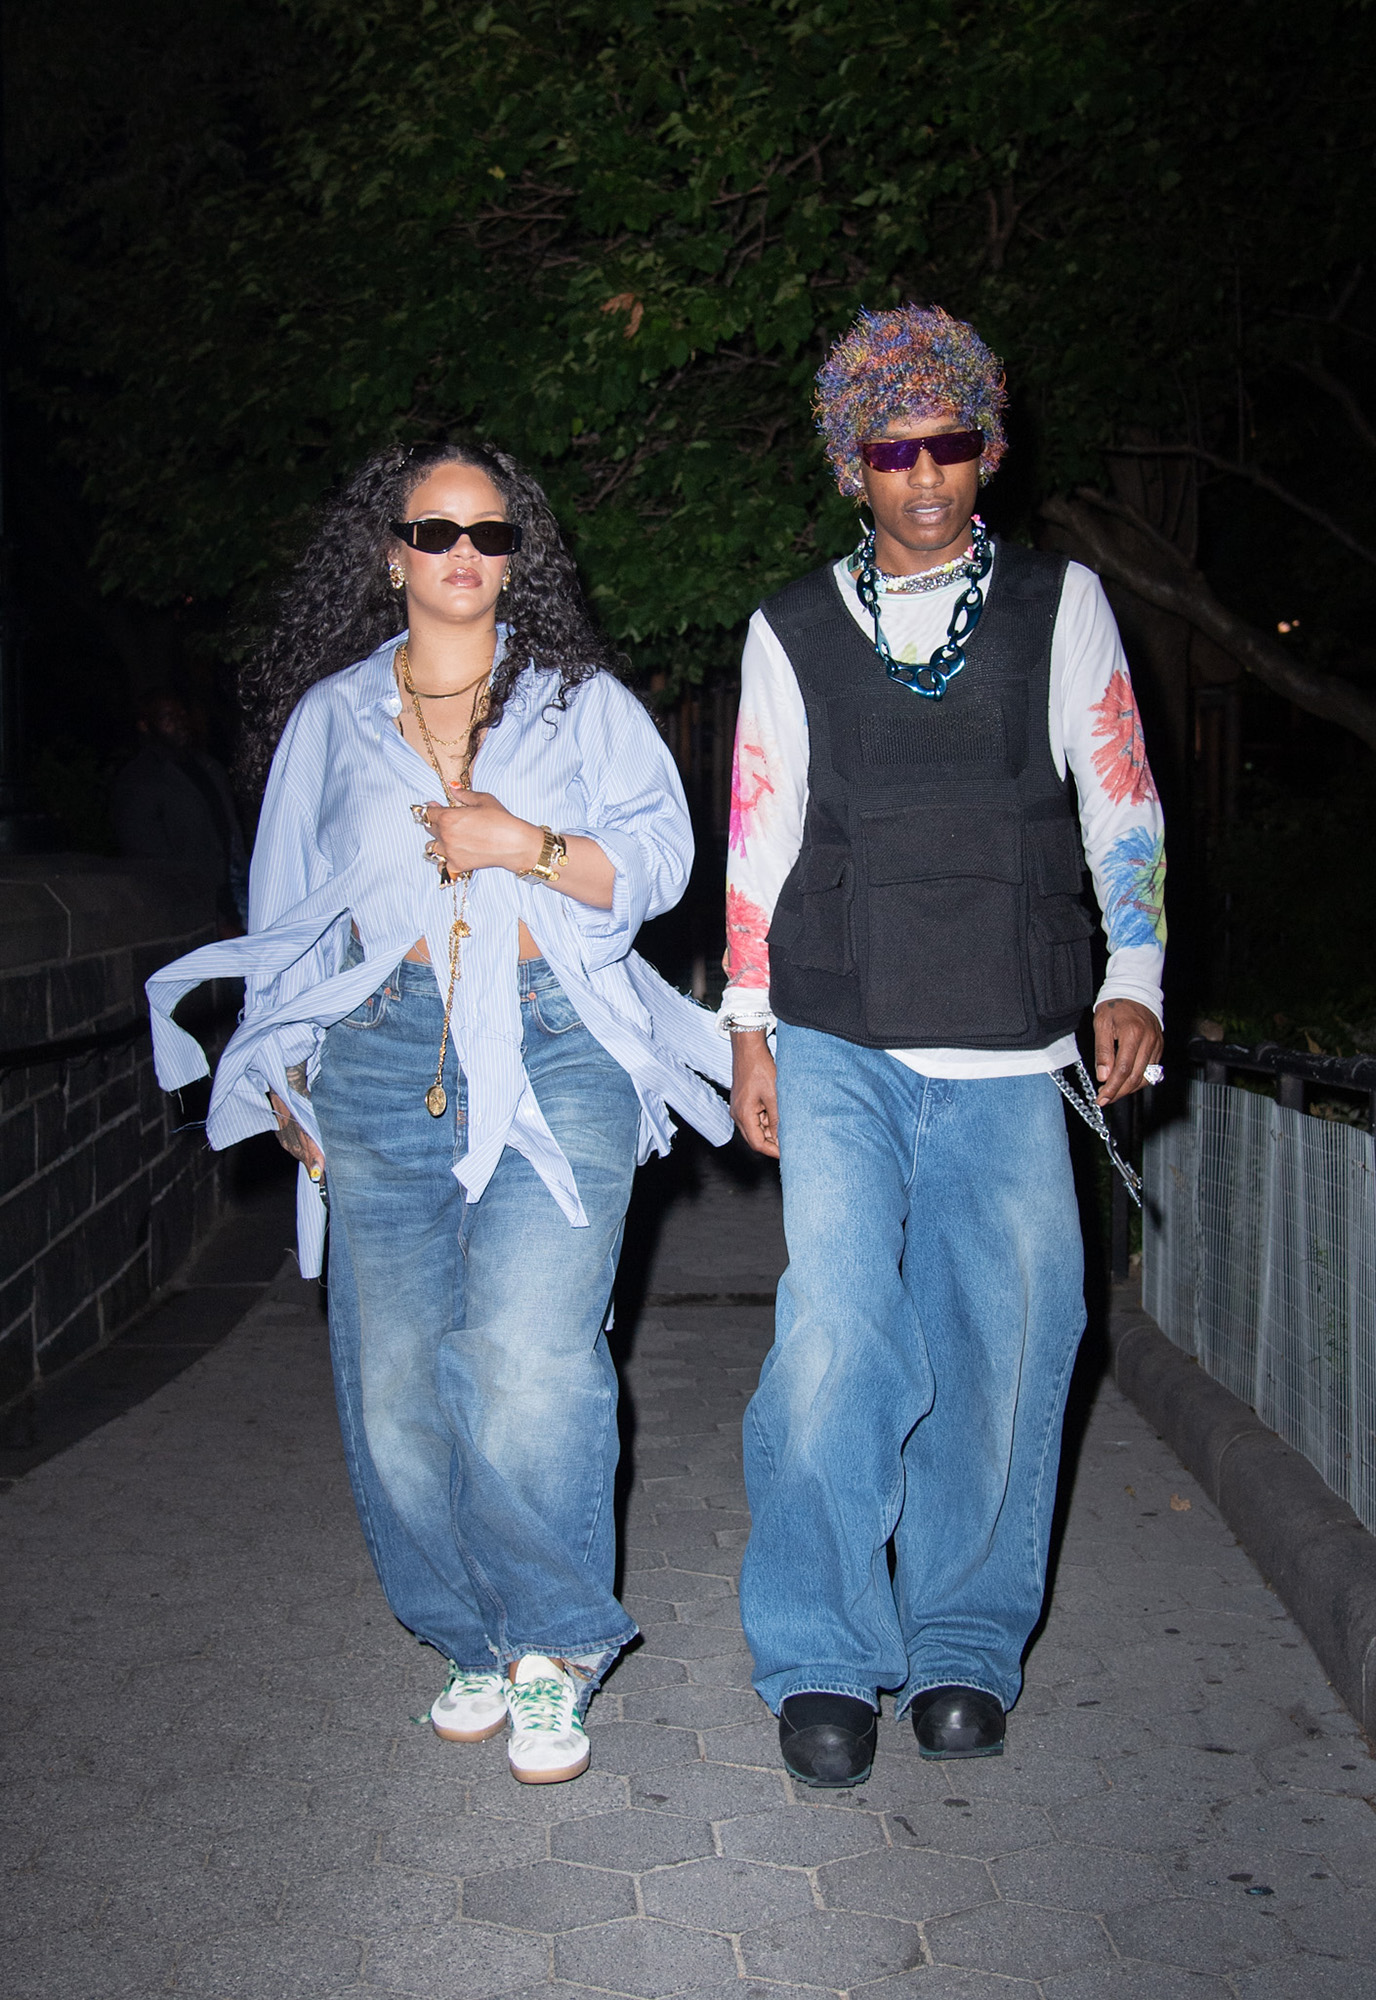 Rihanna, ASAP Rocky Take Pre-Sunrise Walk in NYC: Photos